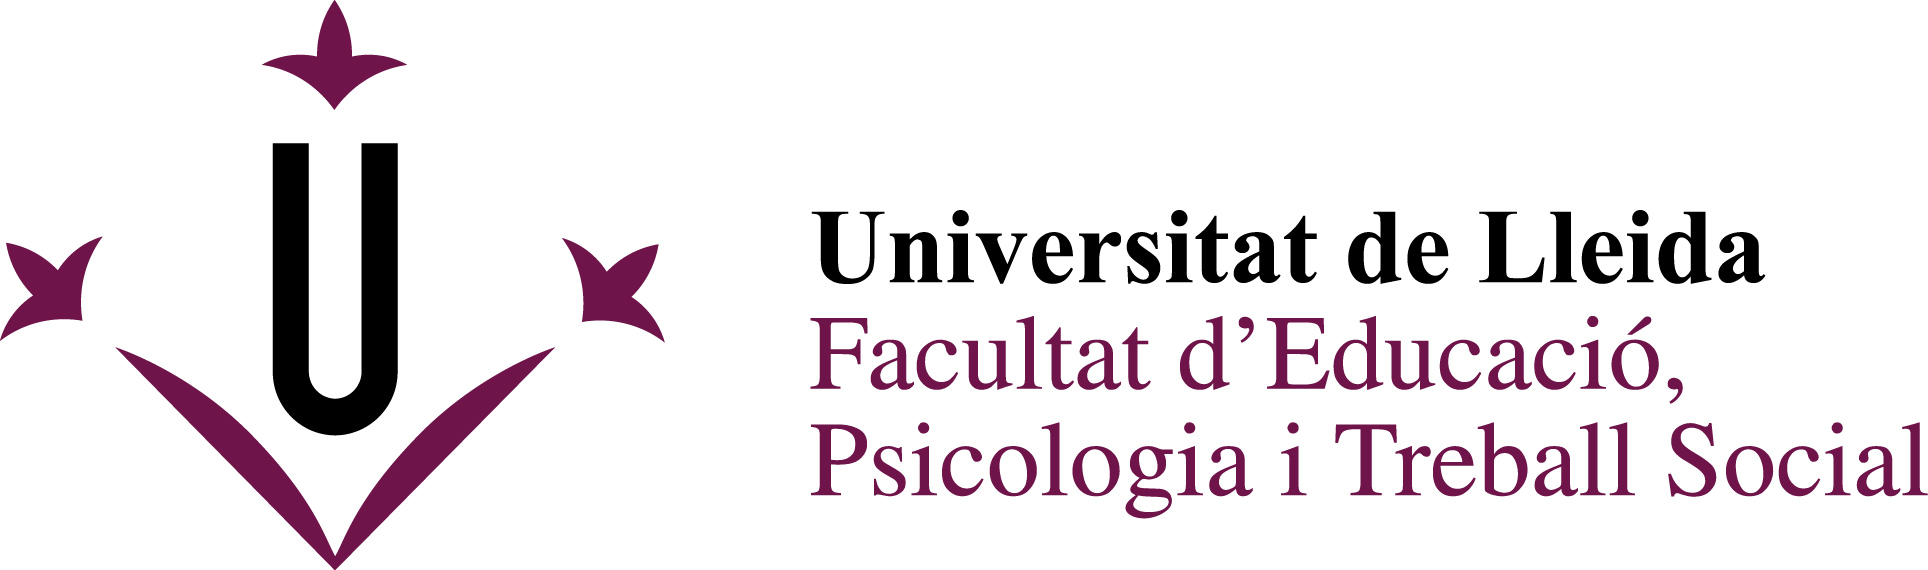 UdL - Facultat d'Educació, Psicologia i Treball Social.